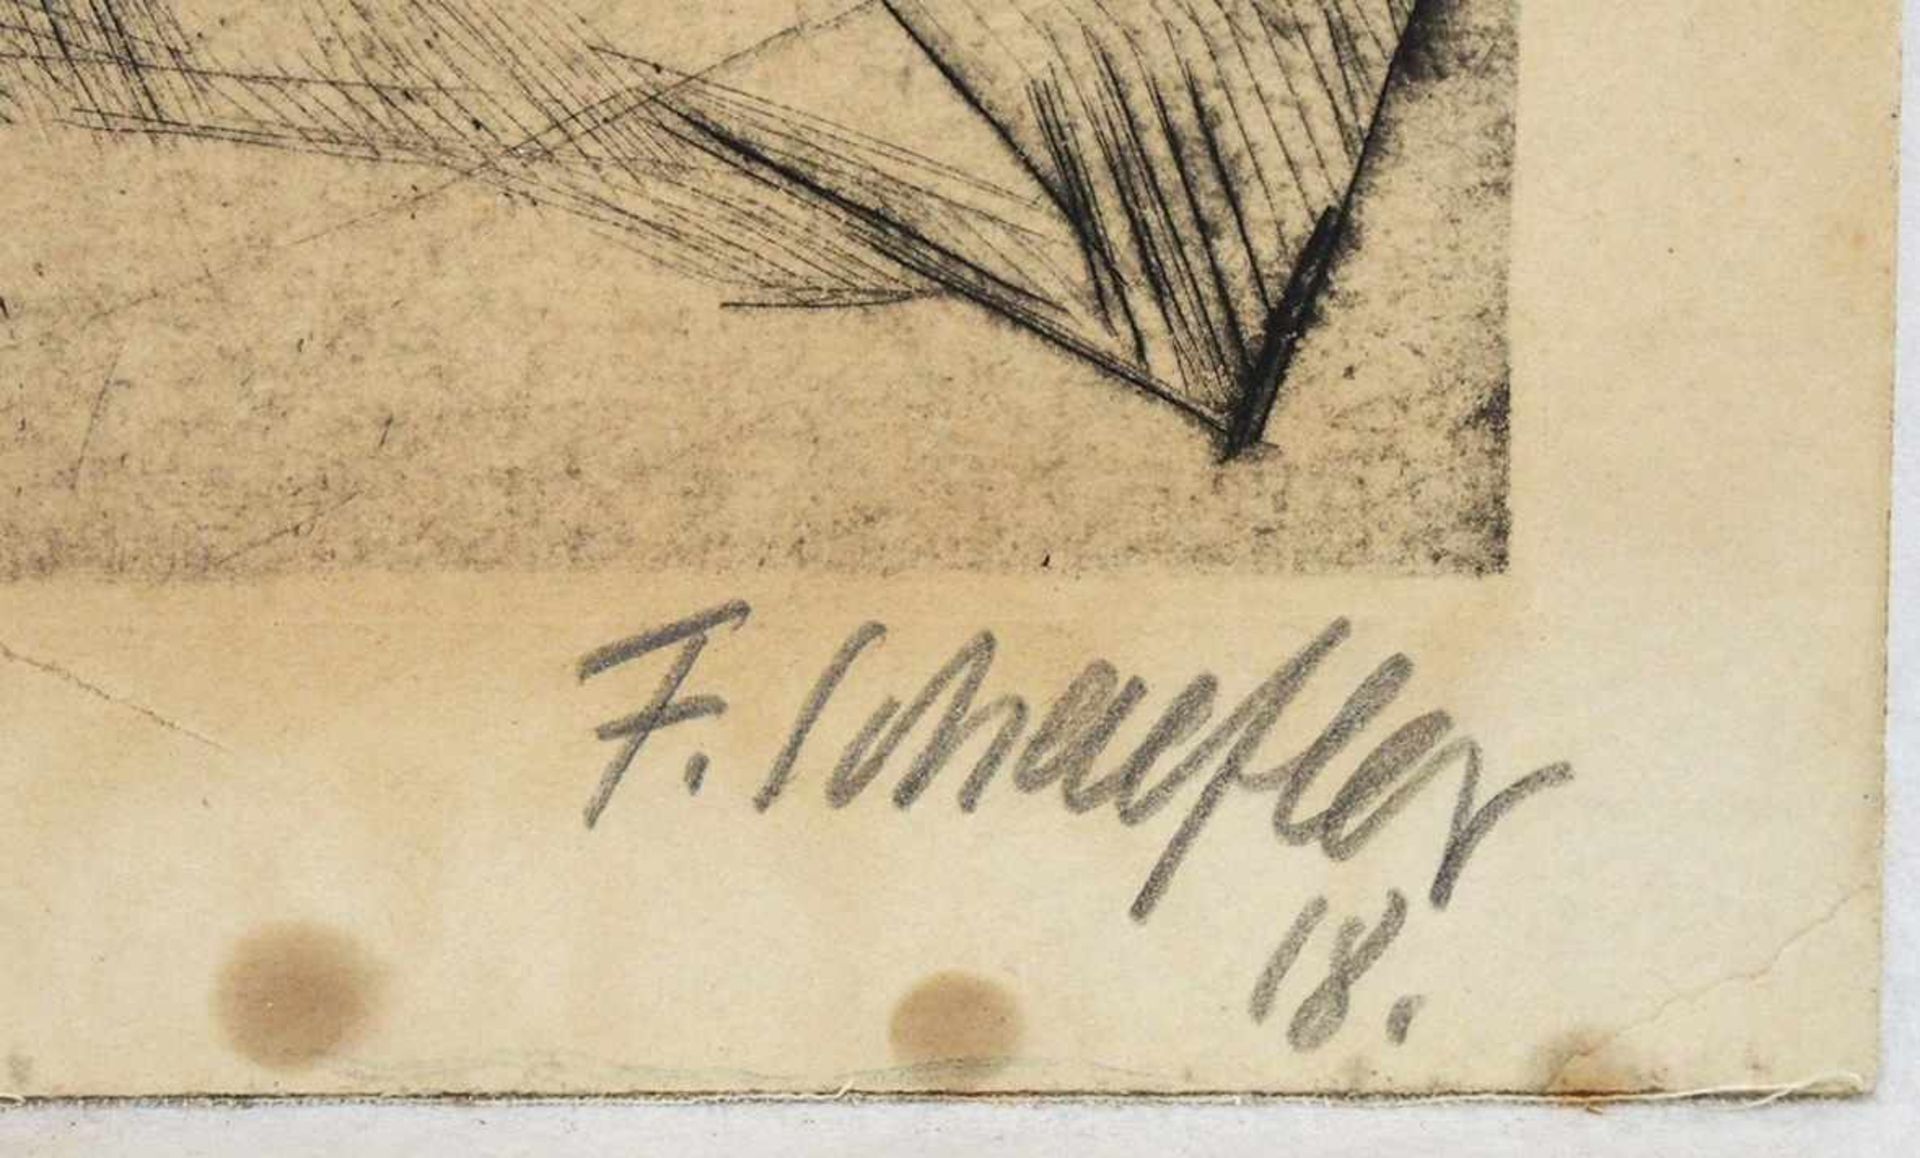 SCHAEFLER, Fritz1888-1954Die BrückeRadierung auf festem Karton, signiert und datiert (19)18 unten - Bild 2 aus 2